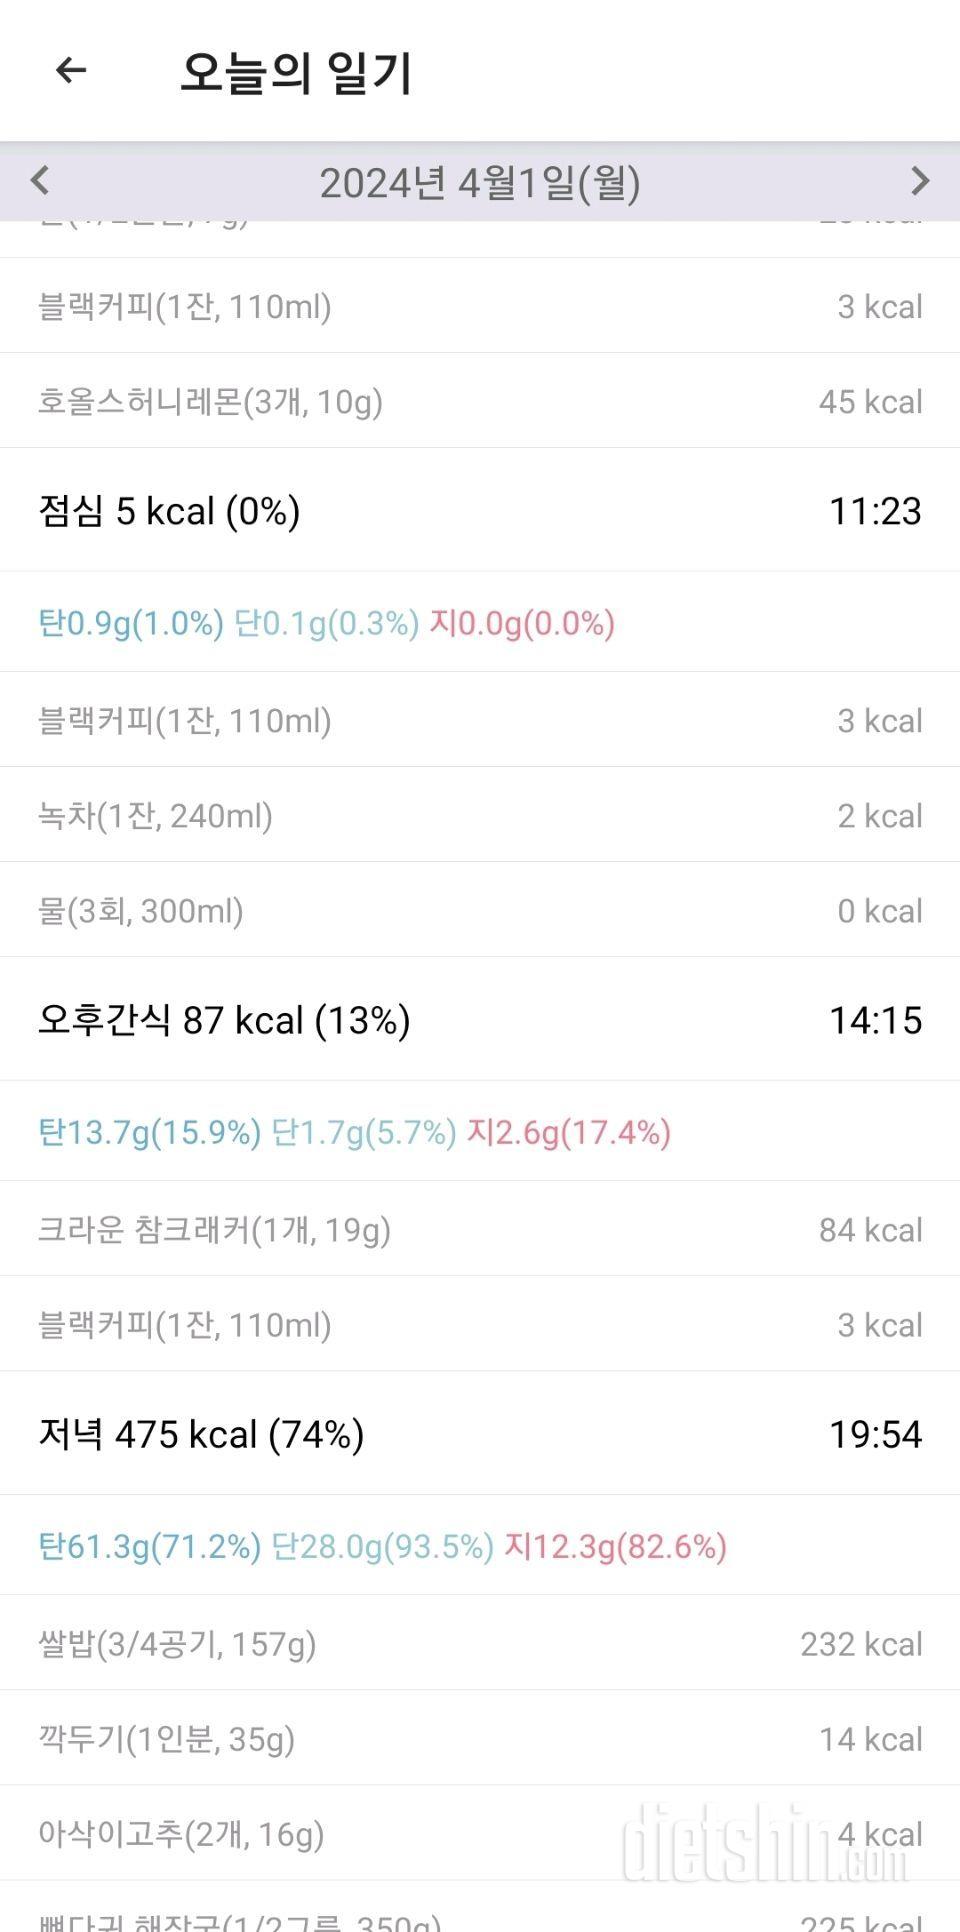 K 26일차) 반 이슬~~ (성공 20, 실패 6. -1.4Kg)